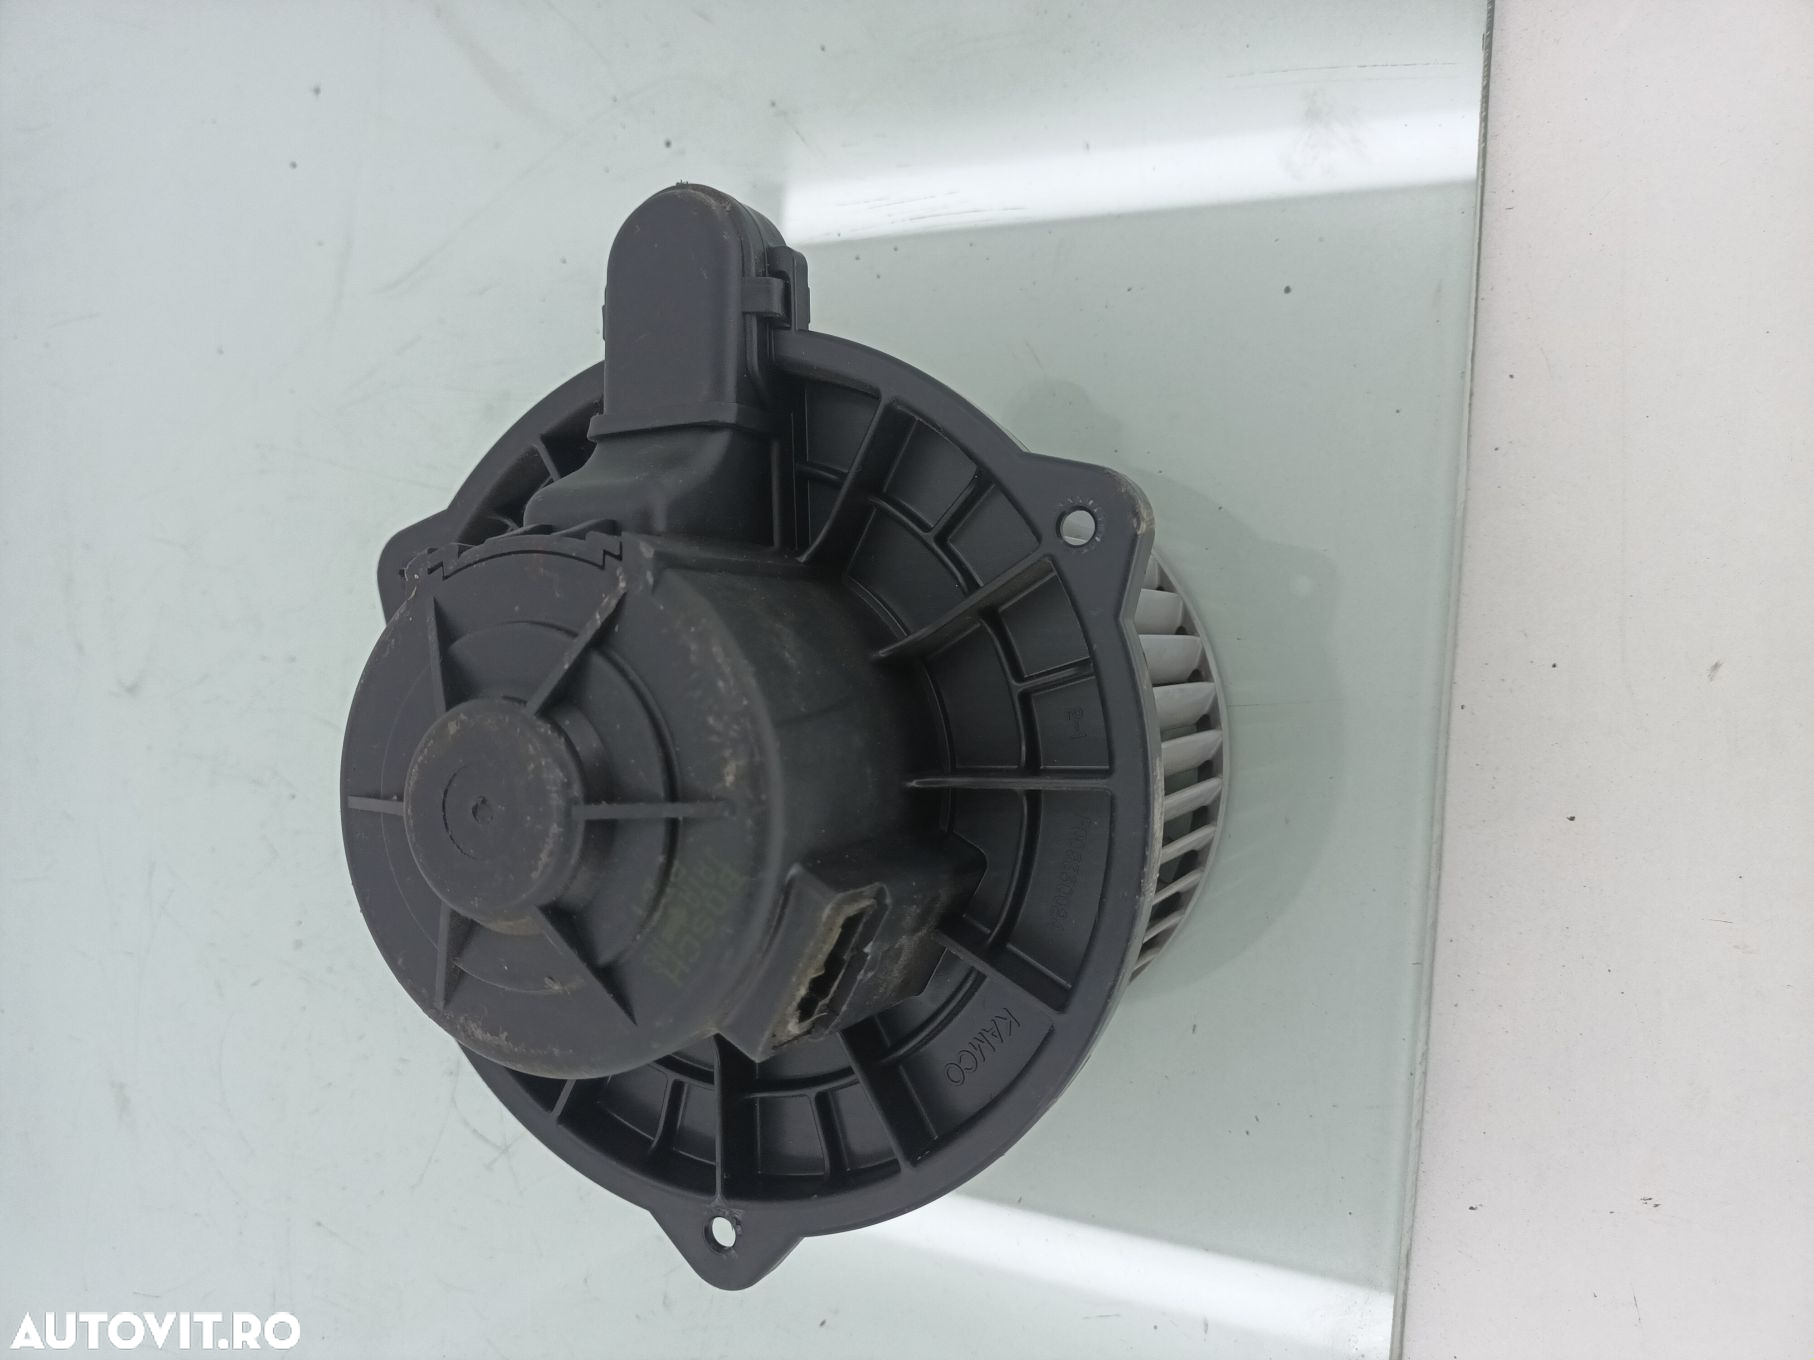 Ventilator bord Hyundai I20 1.3i G4LA-5H 2012-2015 - 3